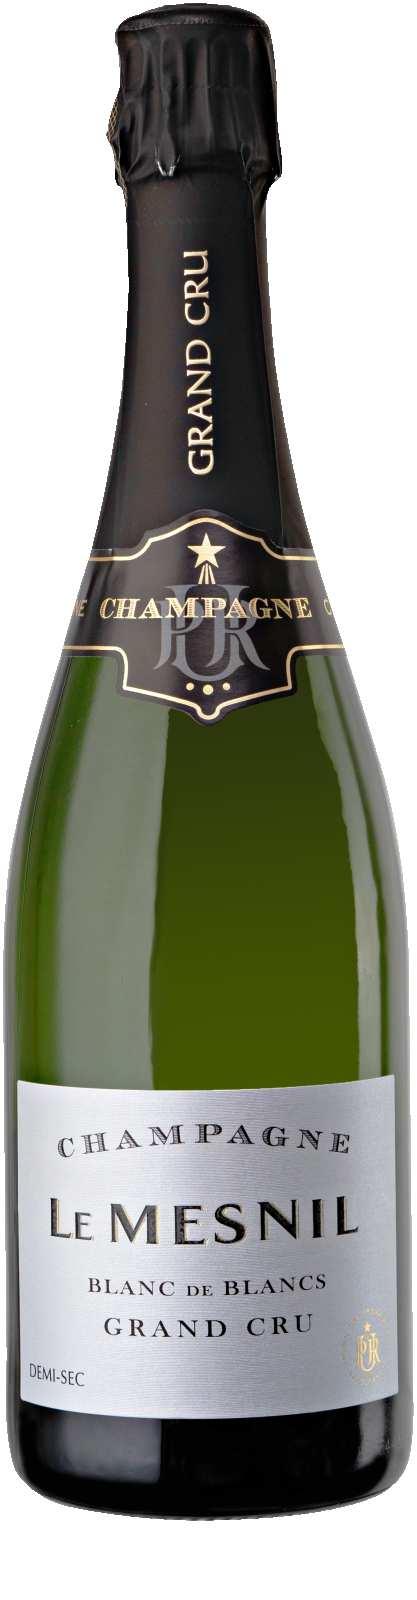 Productfoto Champagne Le Mesnil Blanc de Blancs Demi-Sec